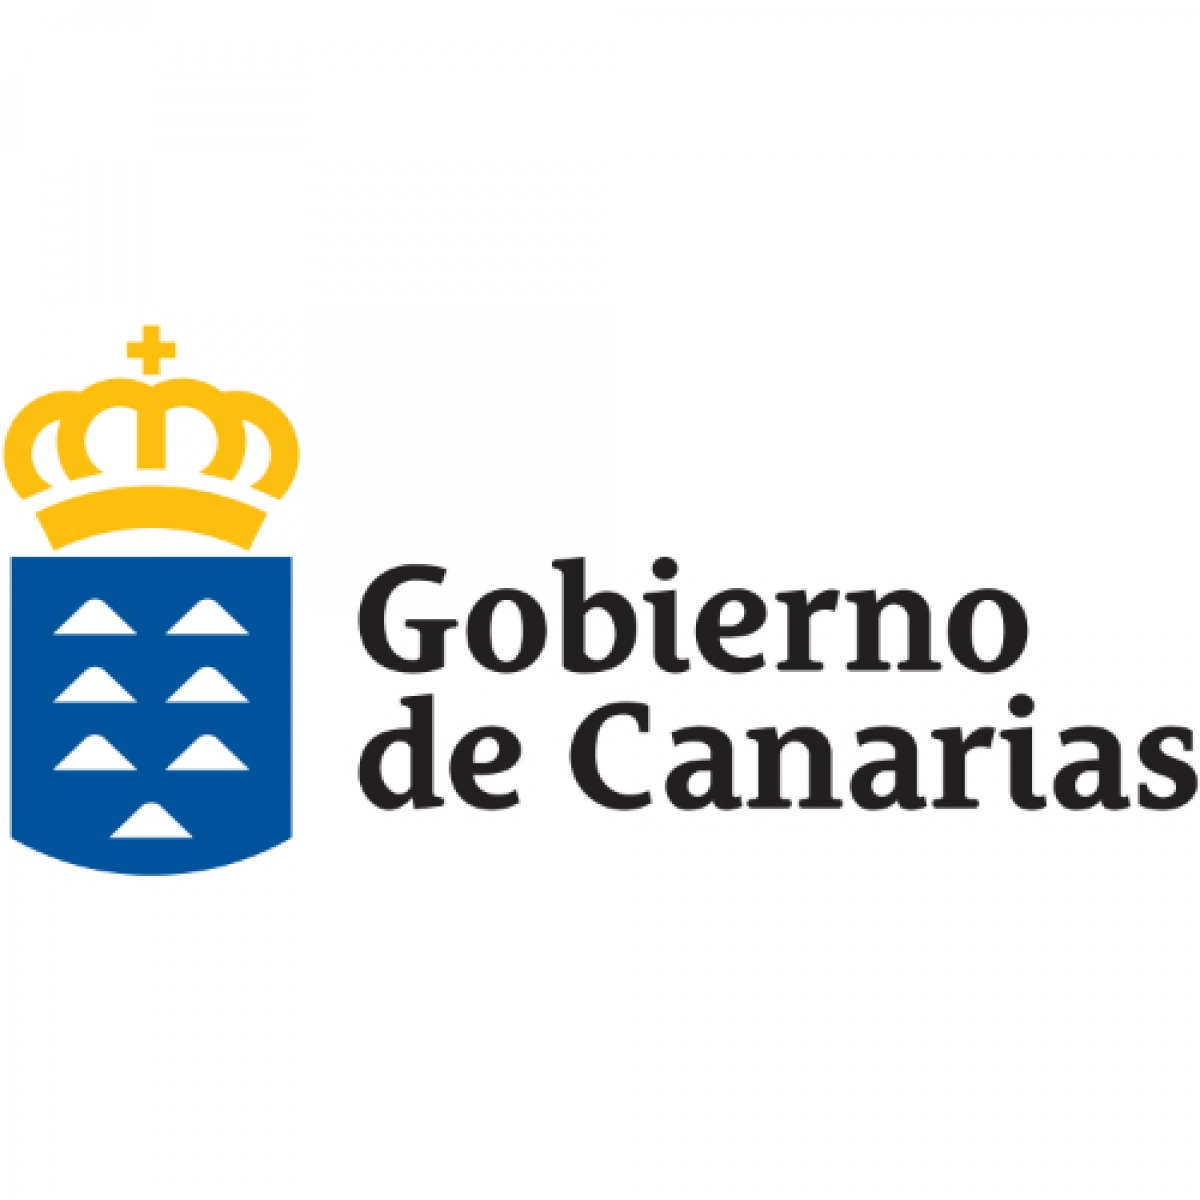 DIGINNOVA: Incorporación de talento joven a las empresas y centros de investigación de Canarias